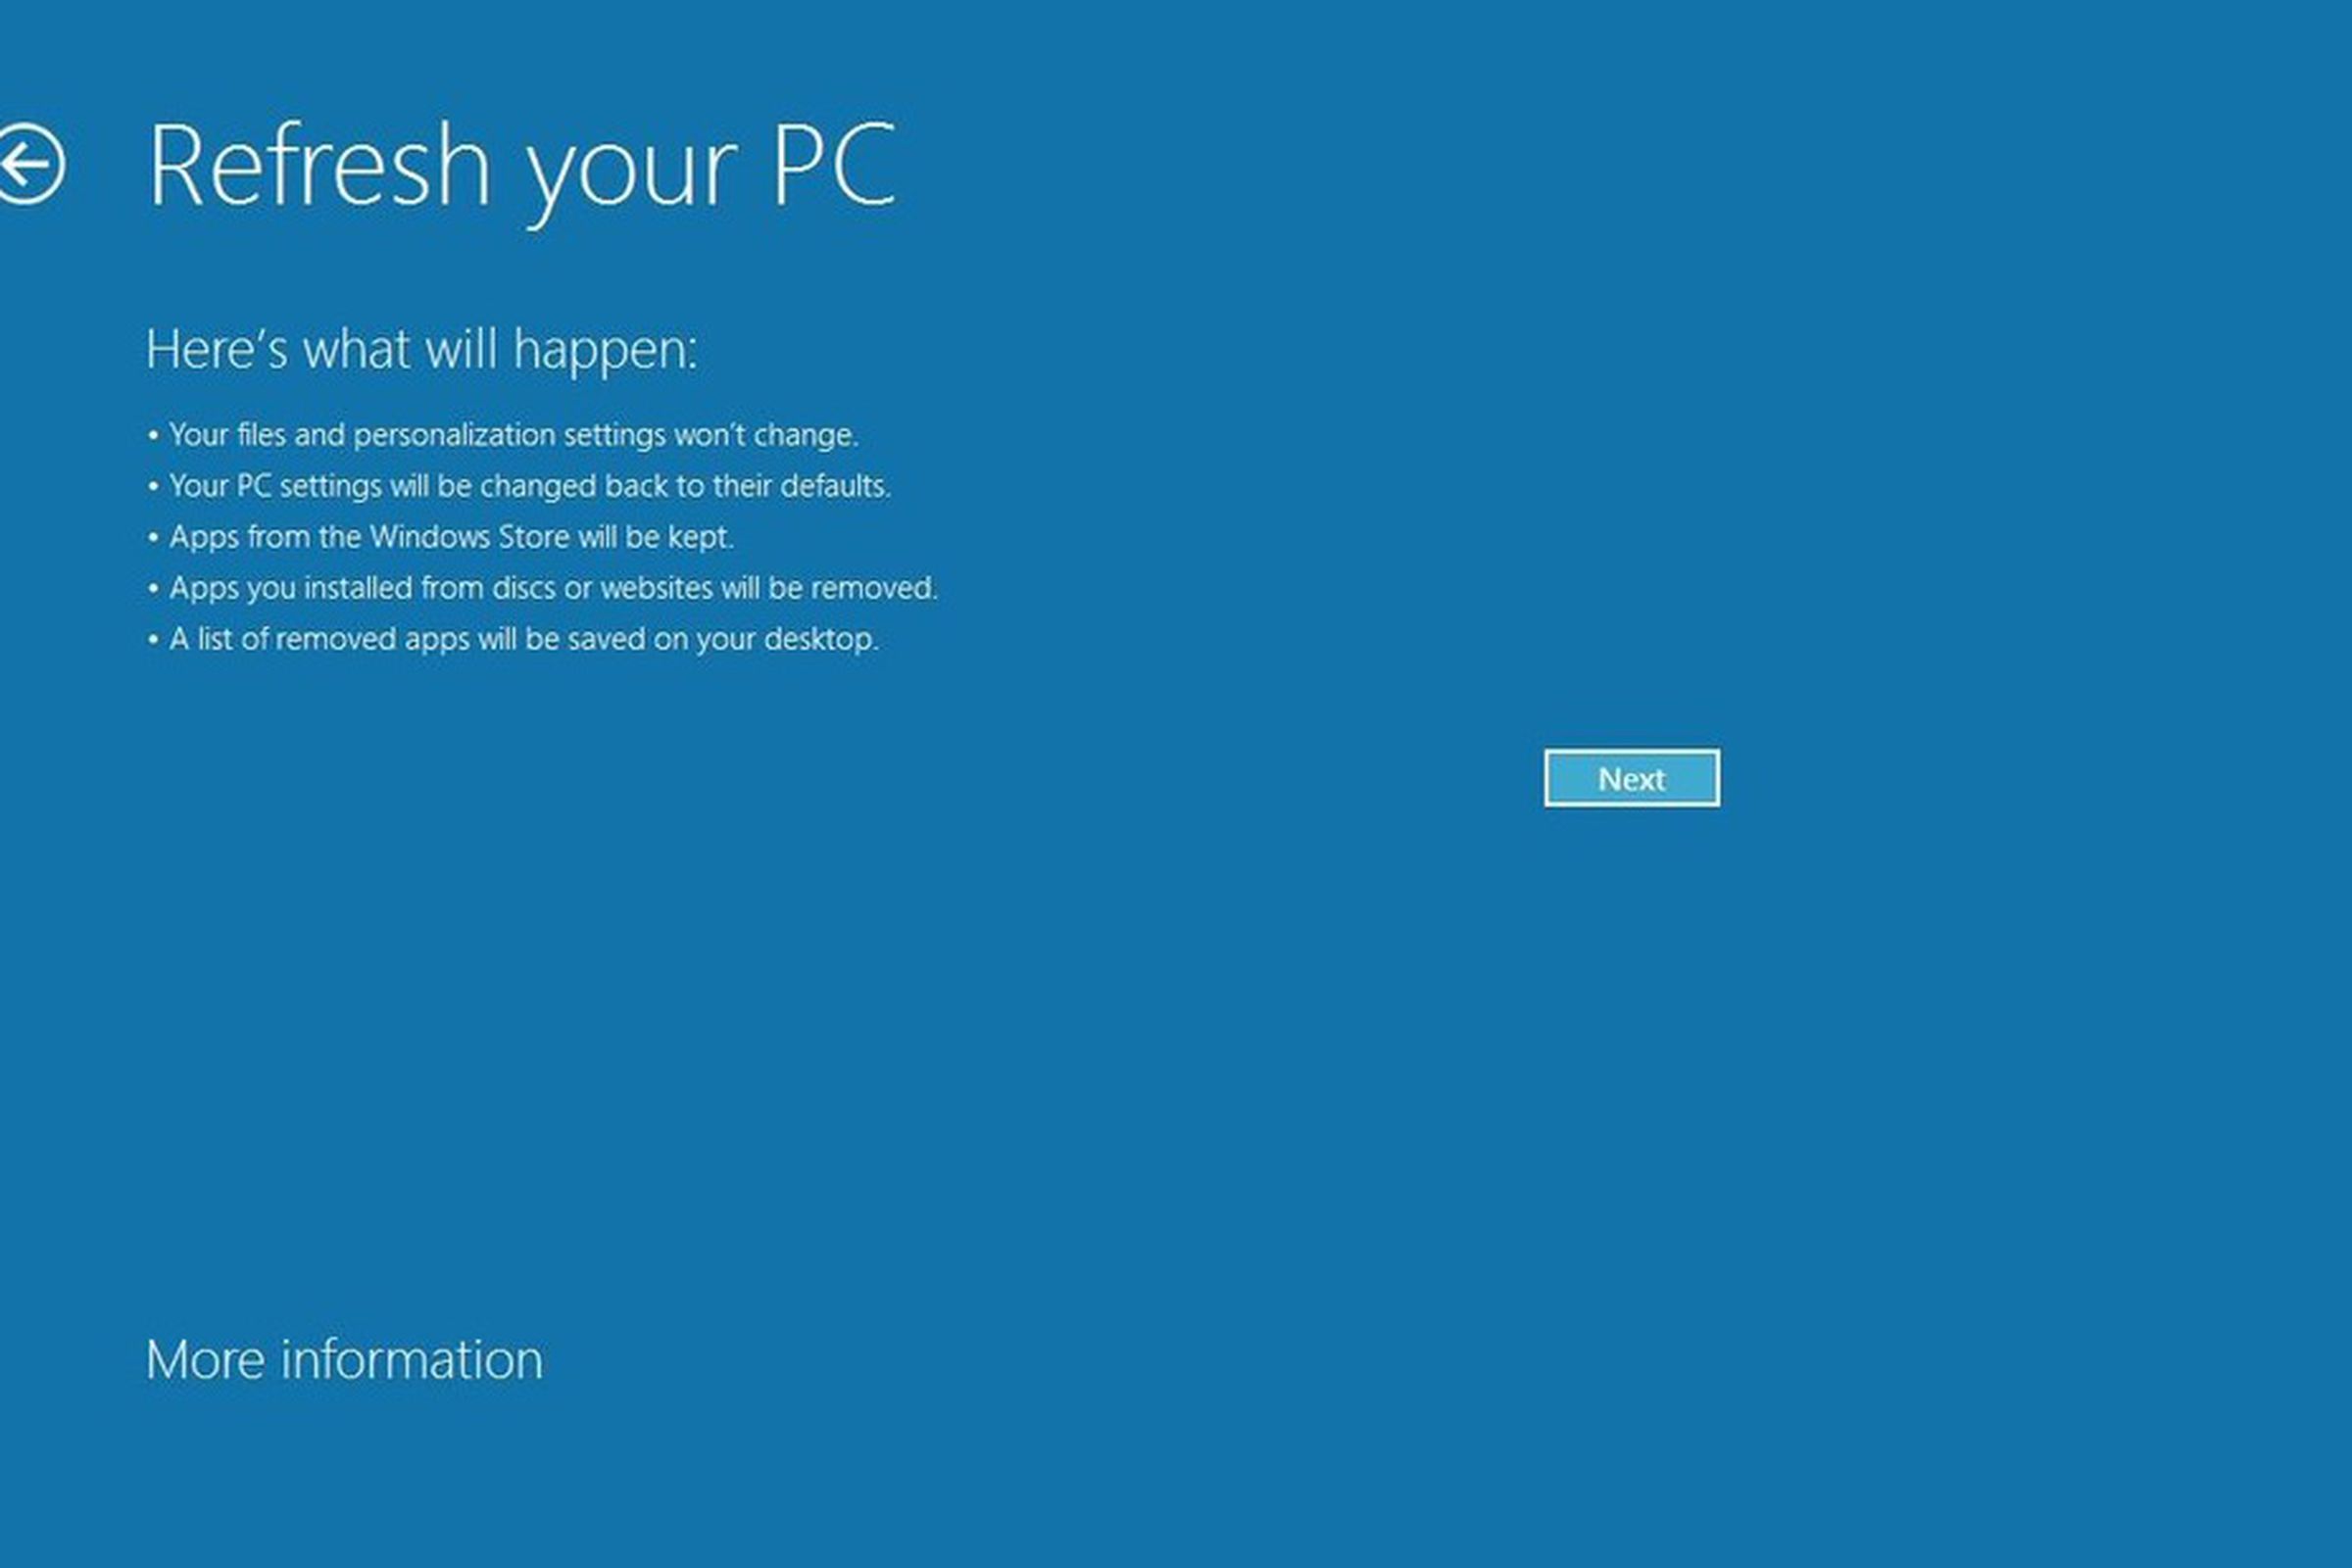 Windows 8 refresh PC